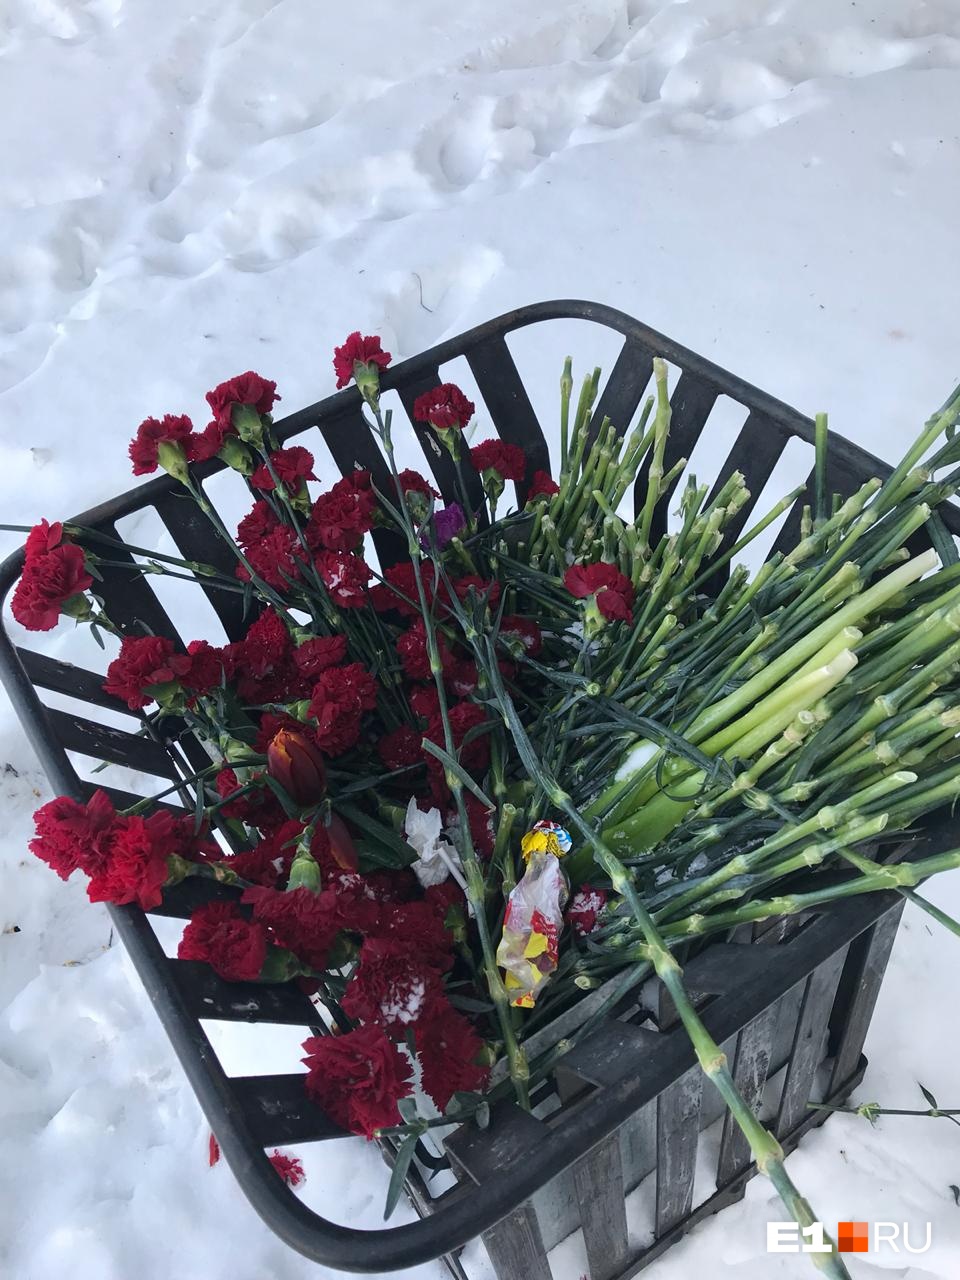 Цветы в мусорке зимой